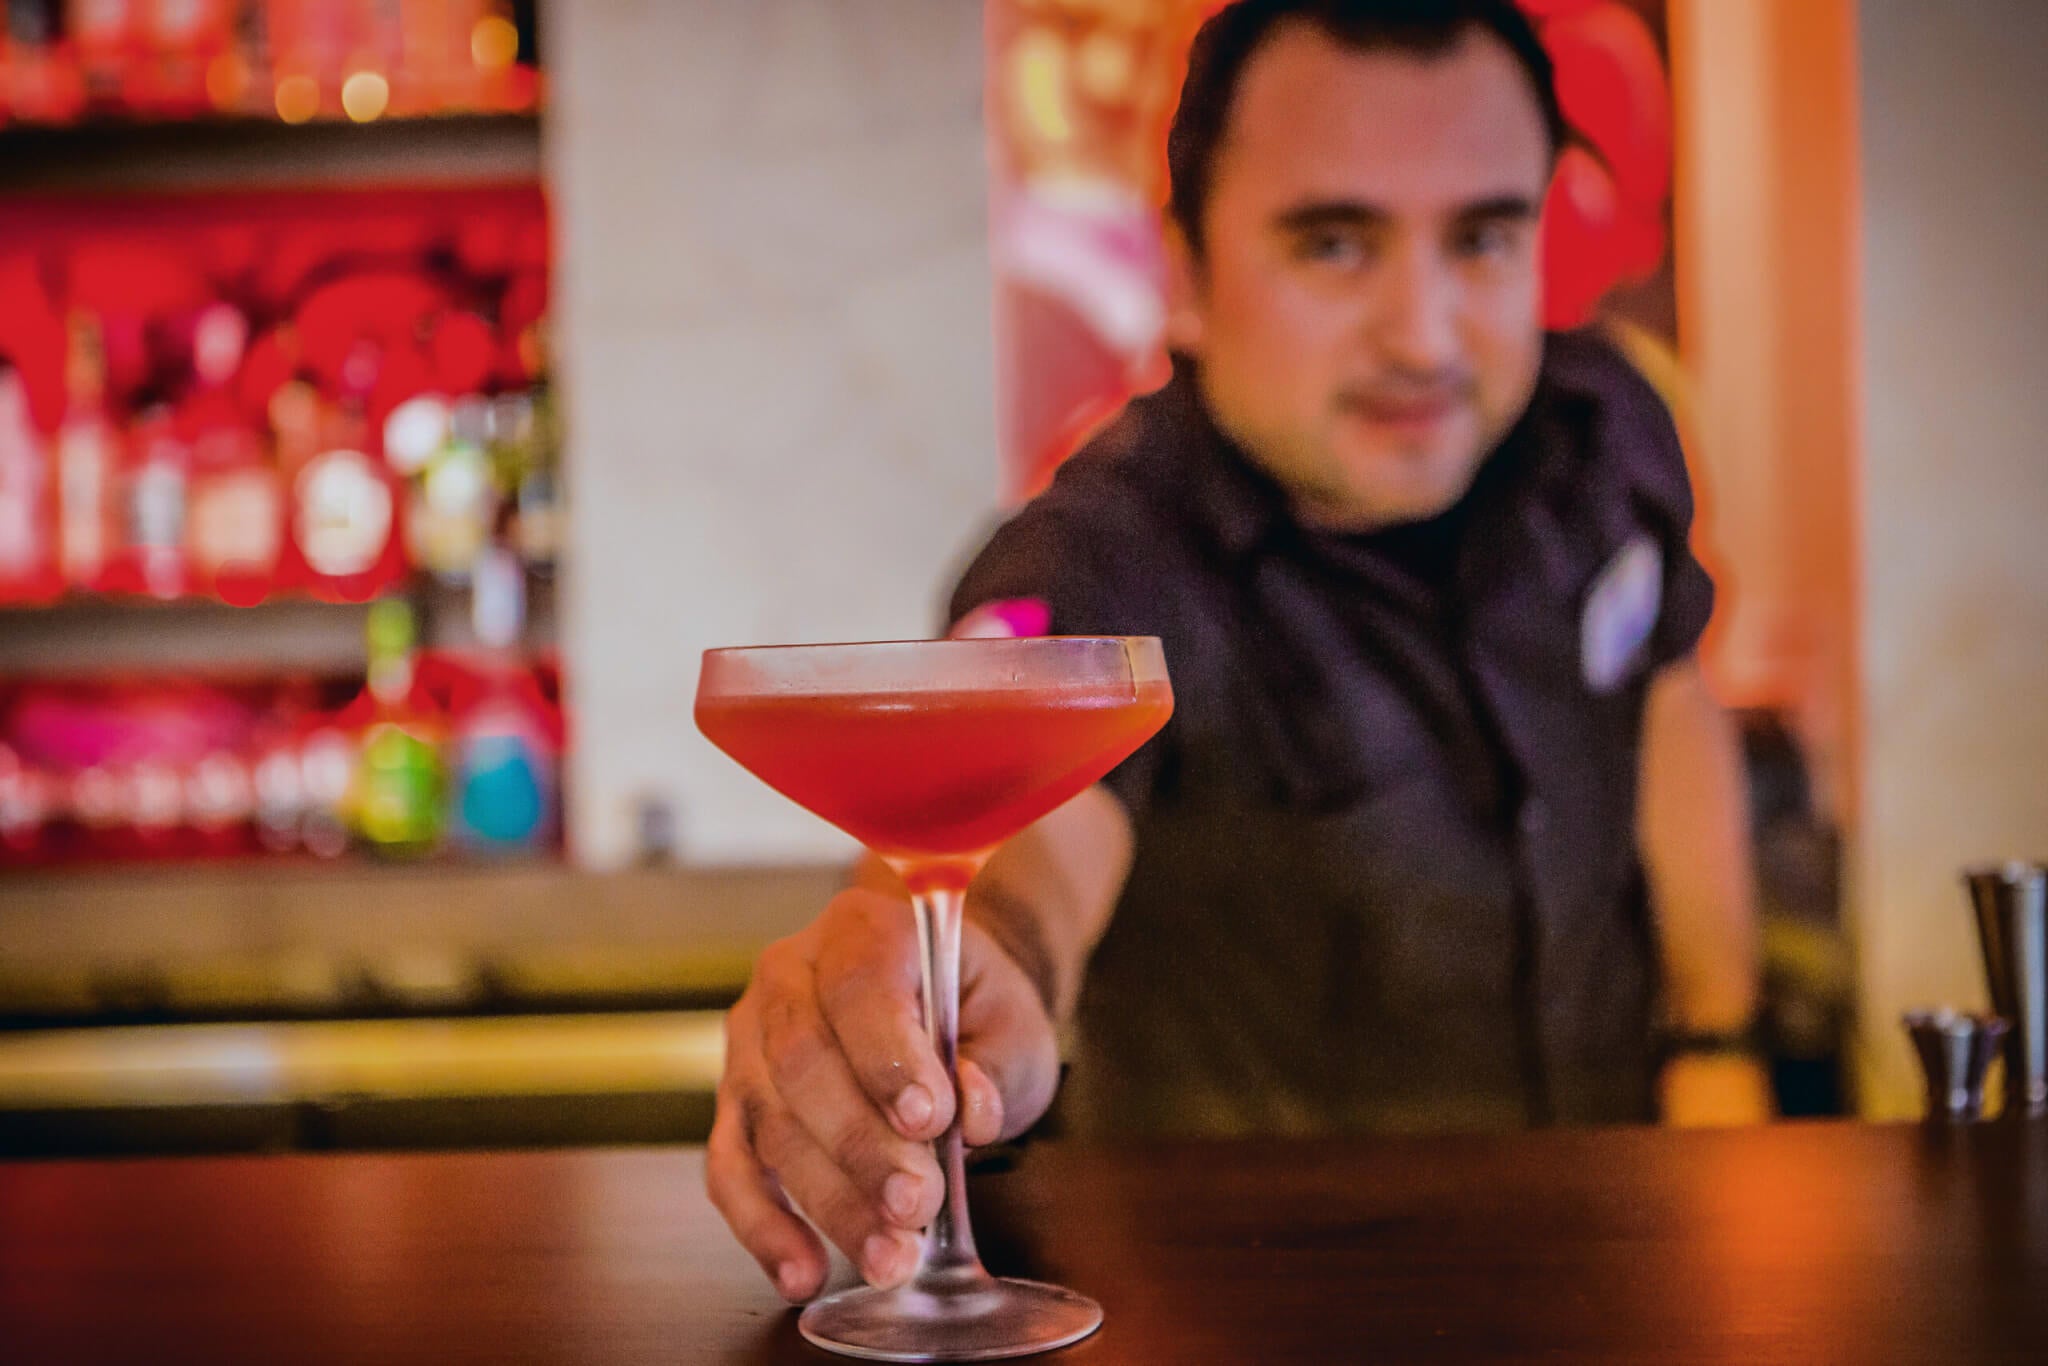 Bartender Serving Cocktail